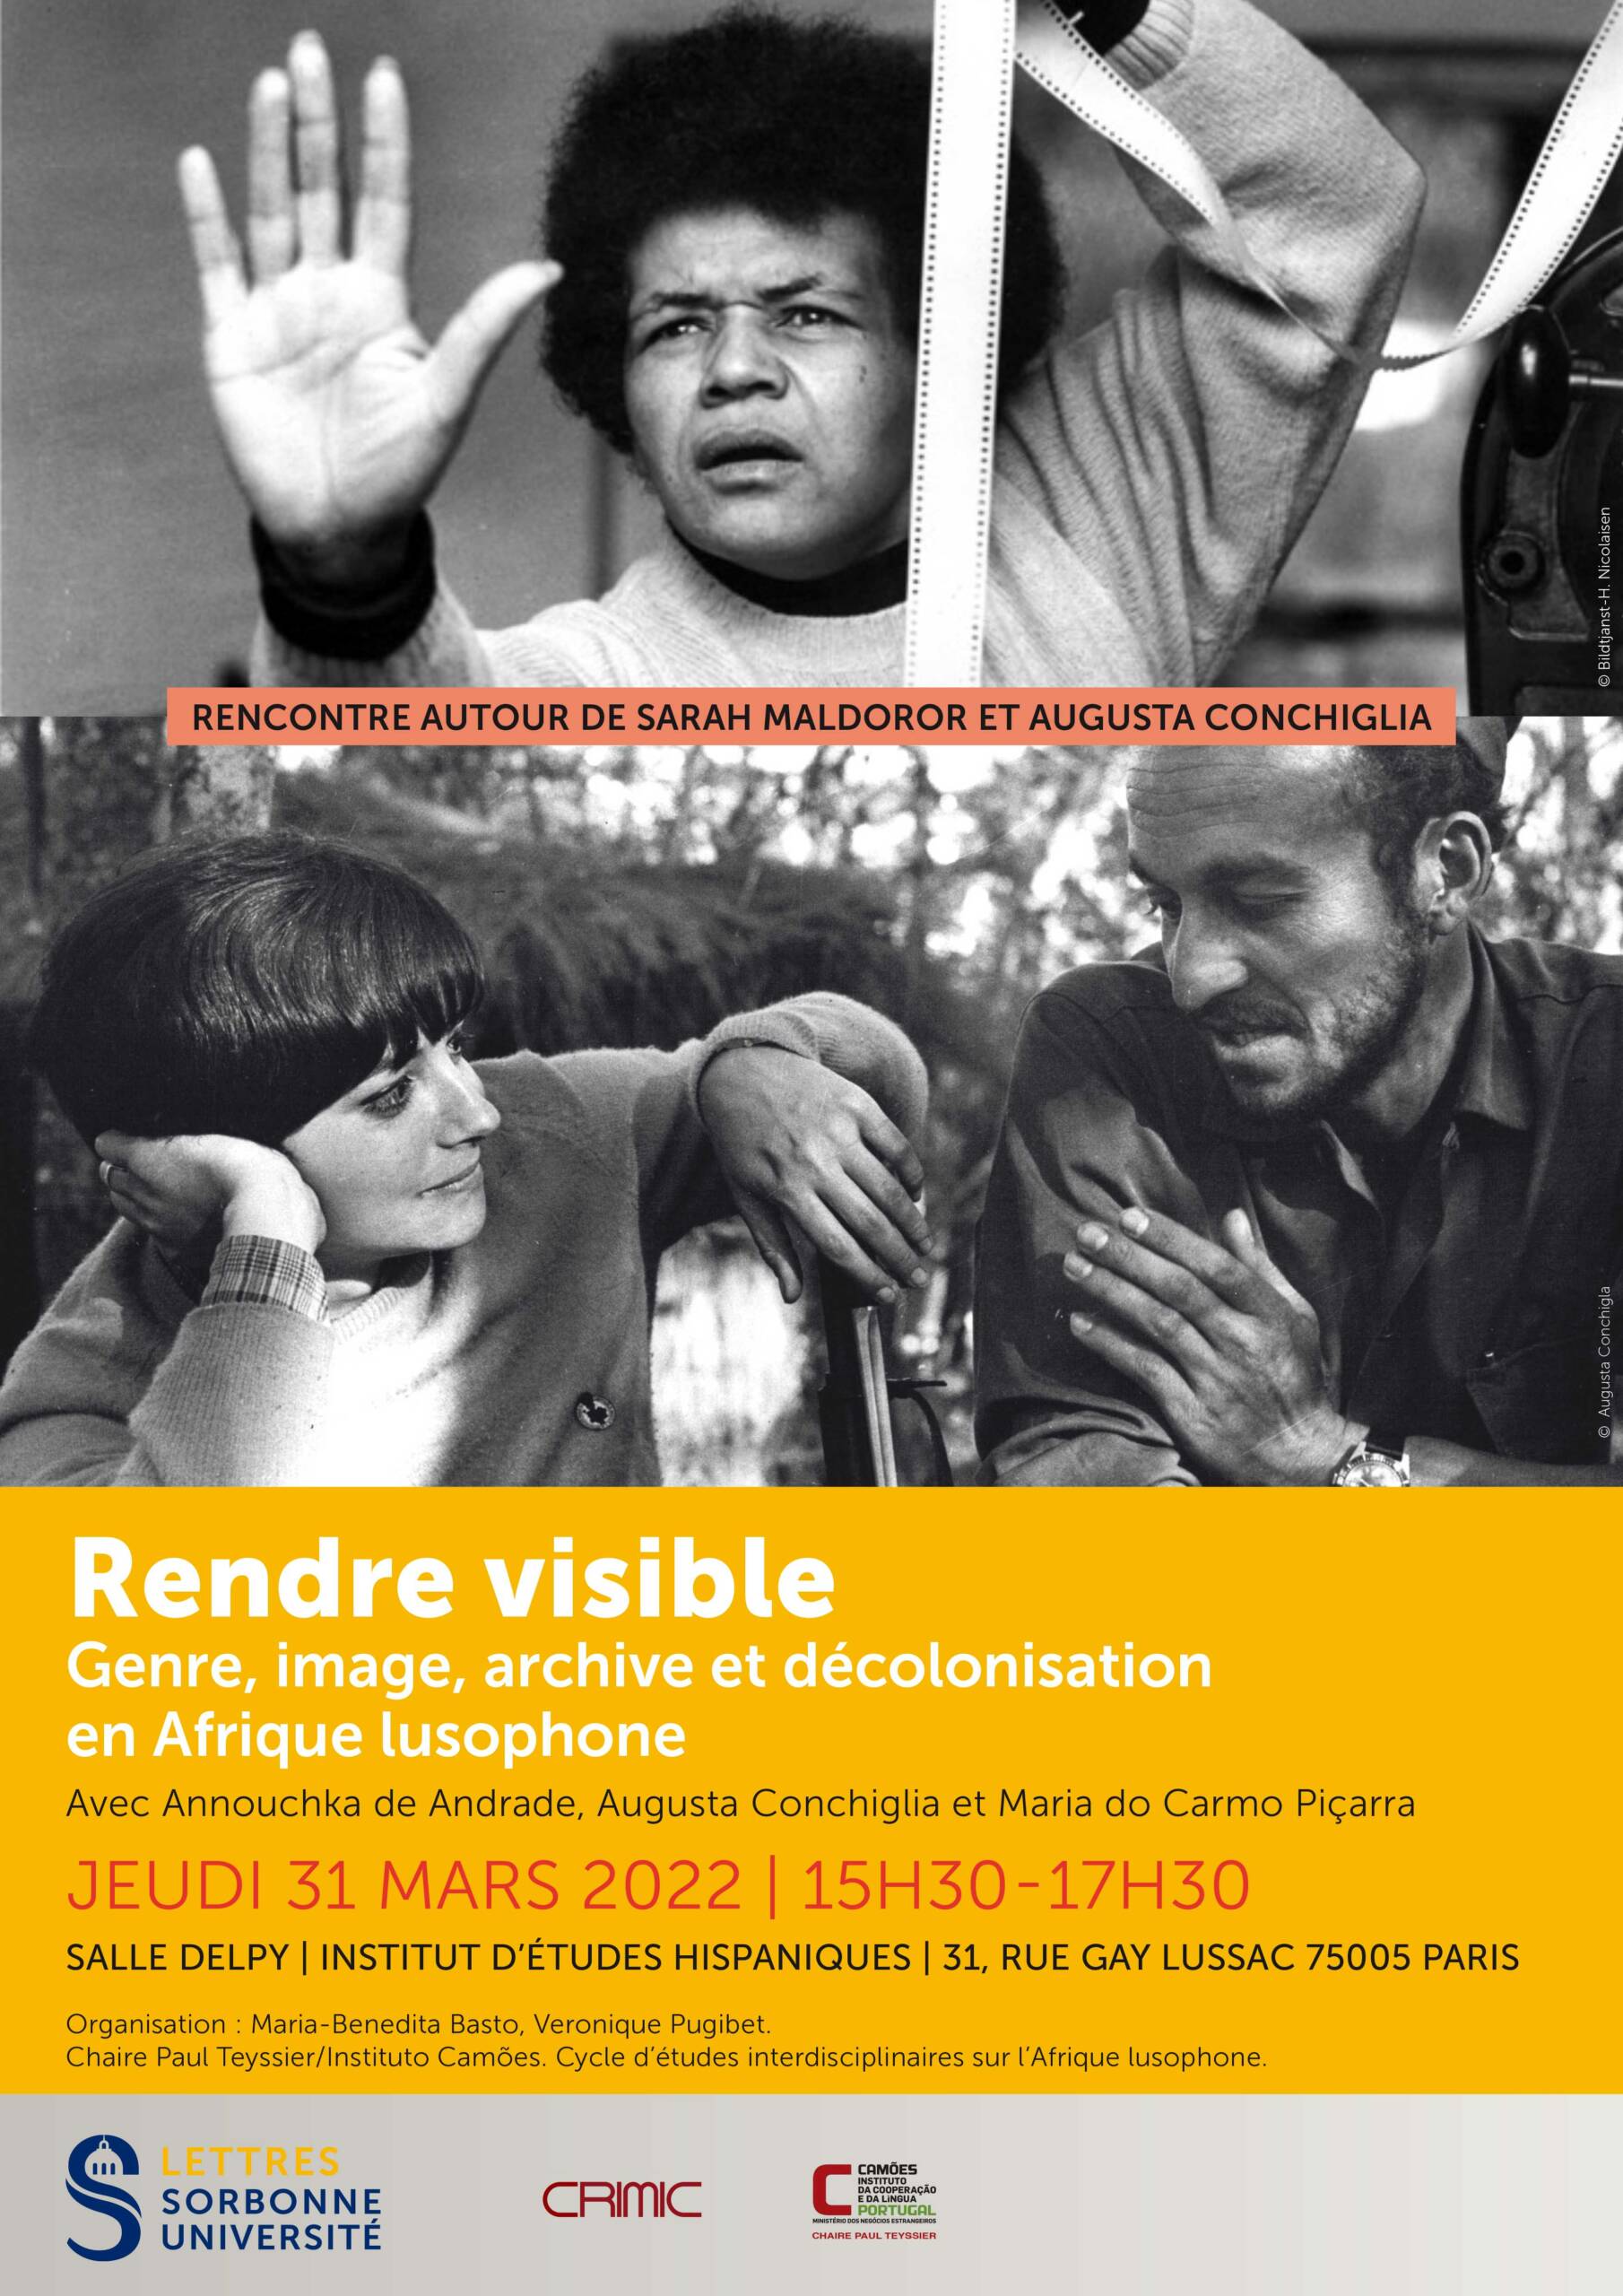 Rendre visible. Genre, image, archive et décolonisation en Afrique lusophone